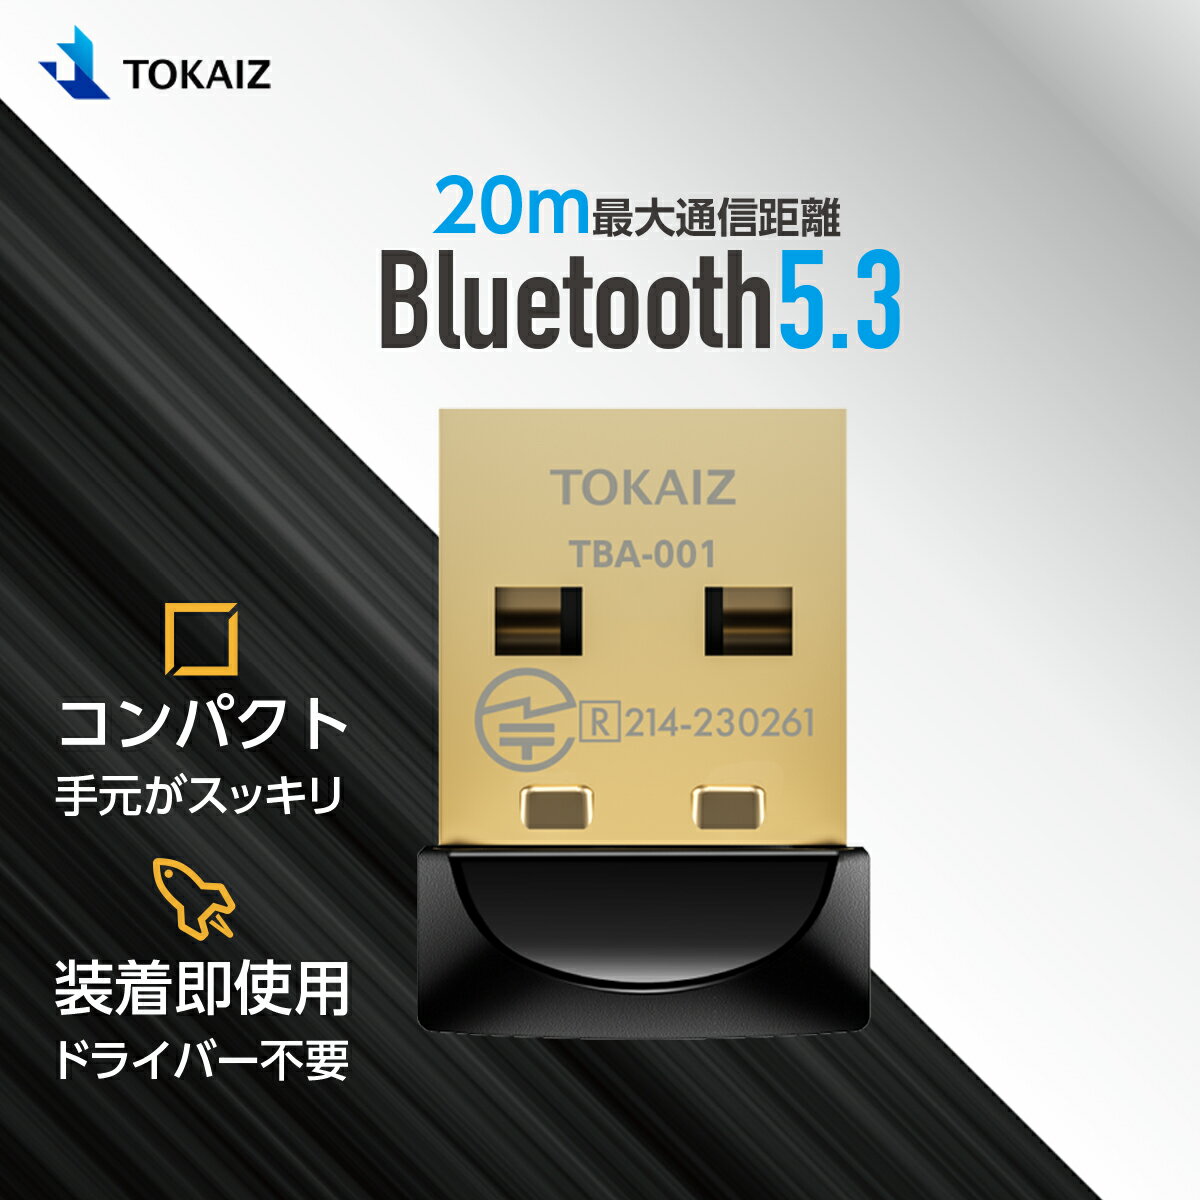 100円OFFクーポンあり! TOKAIZ Bluetooth アダプター 5.3 まで対応 低遅延 超安定で20m長距離 レシーバー USB bluetooth 子機 ブルートゥース アダプター ワイヤレス イヤホン コントローラー マウス キーボード オーディオ 通話 Windows 11 10 8.1 7 pc 対応 TBA-001